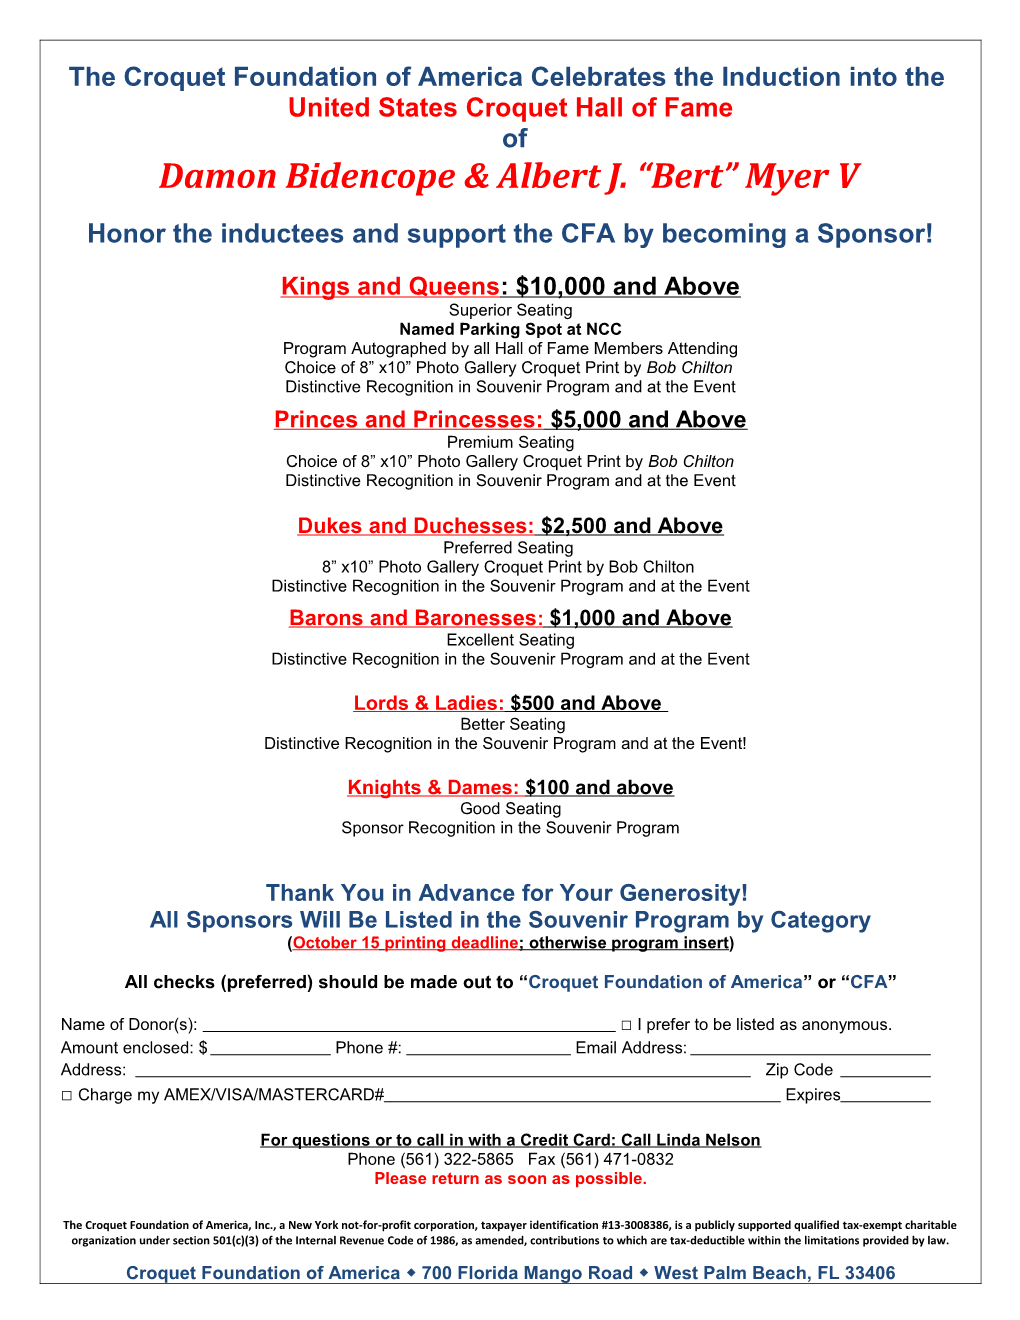 Damon Bidencope & Albert J. Bert Myer V